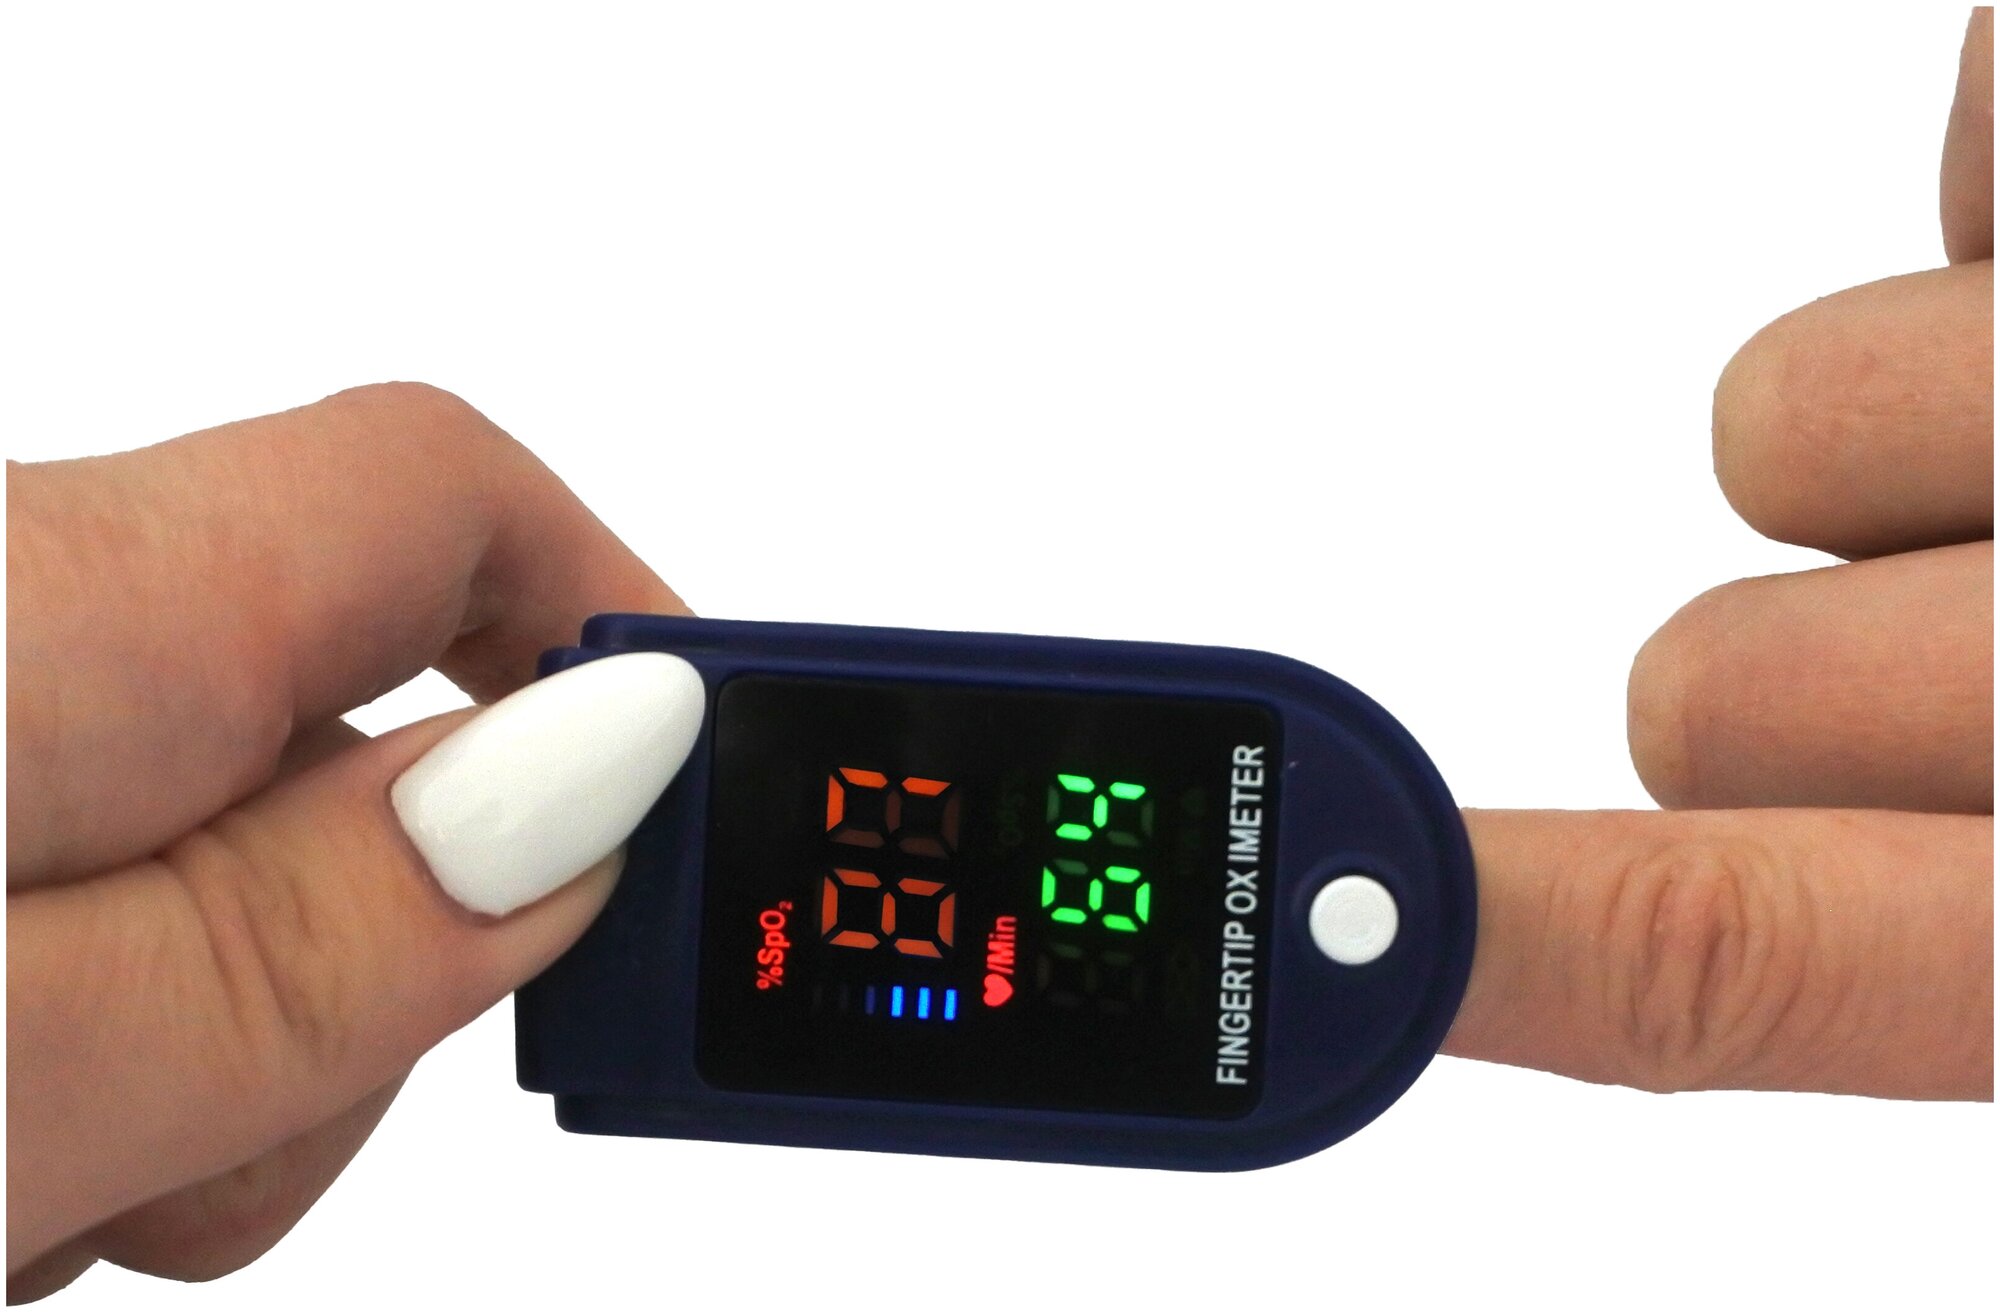 Пульсоксиметр/пульсометр - медицинский прибор для измерения сатурации (кислорода в крови)